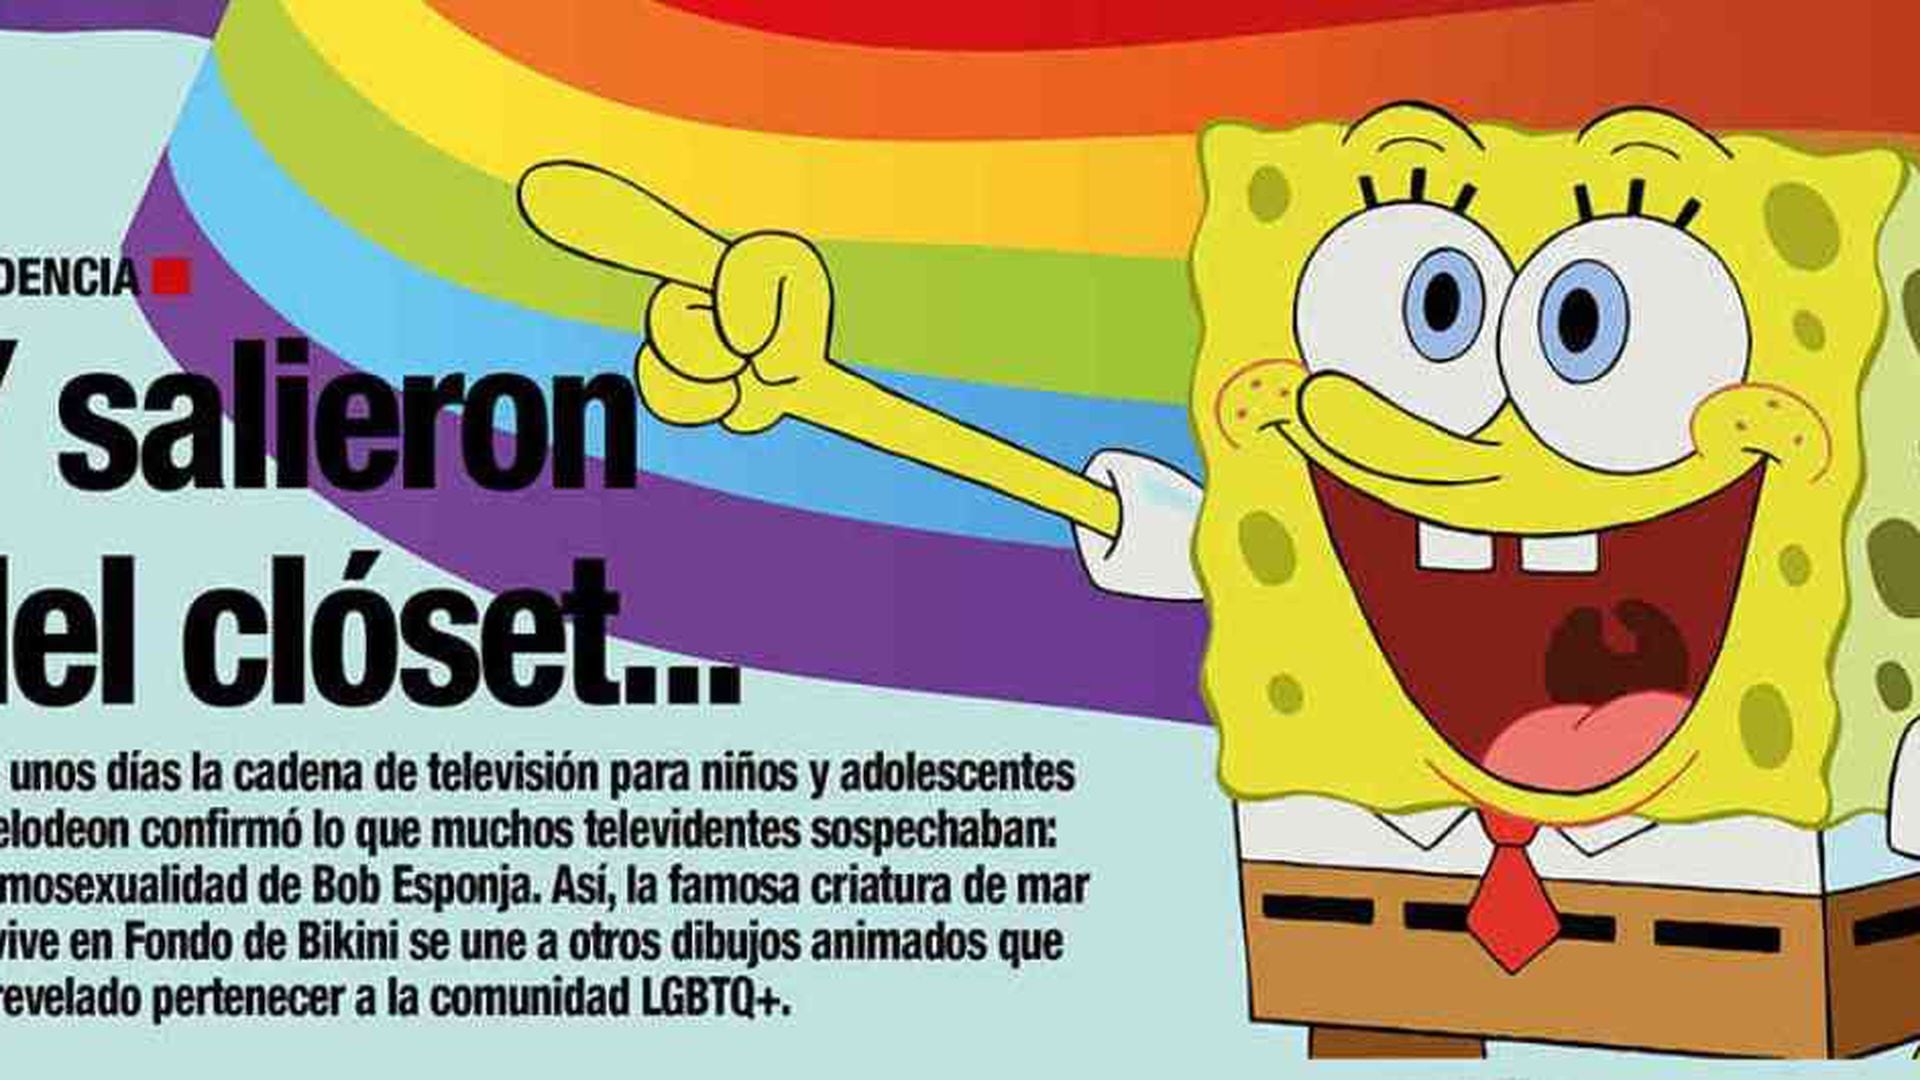 LGBTQ+: los dibujos animados que salieron clóset